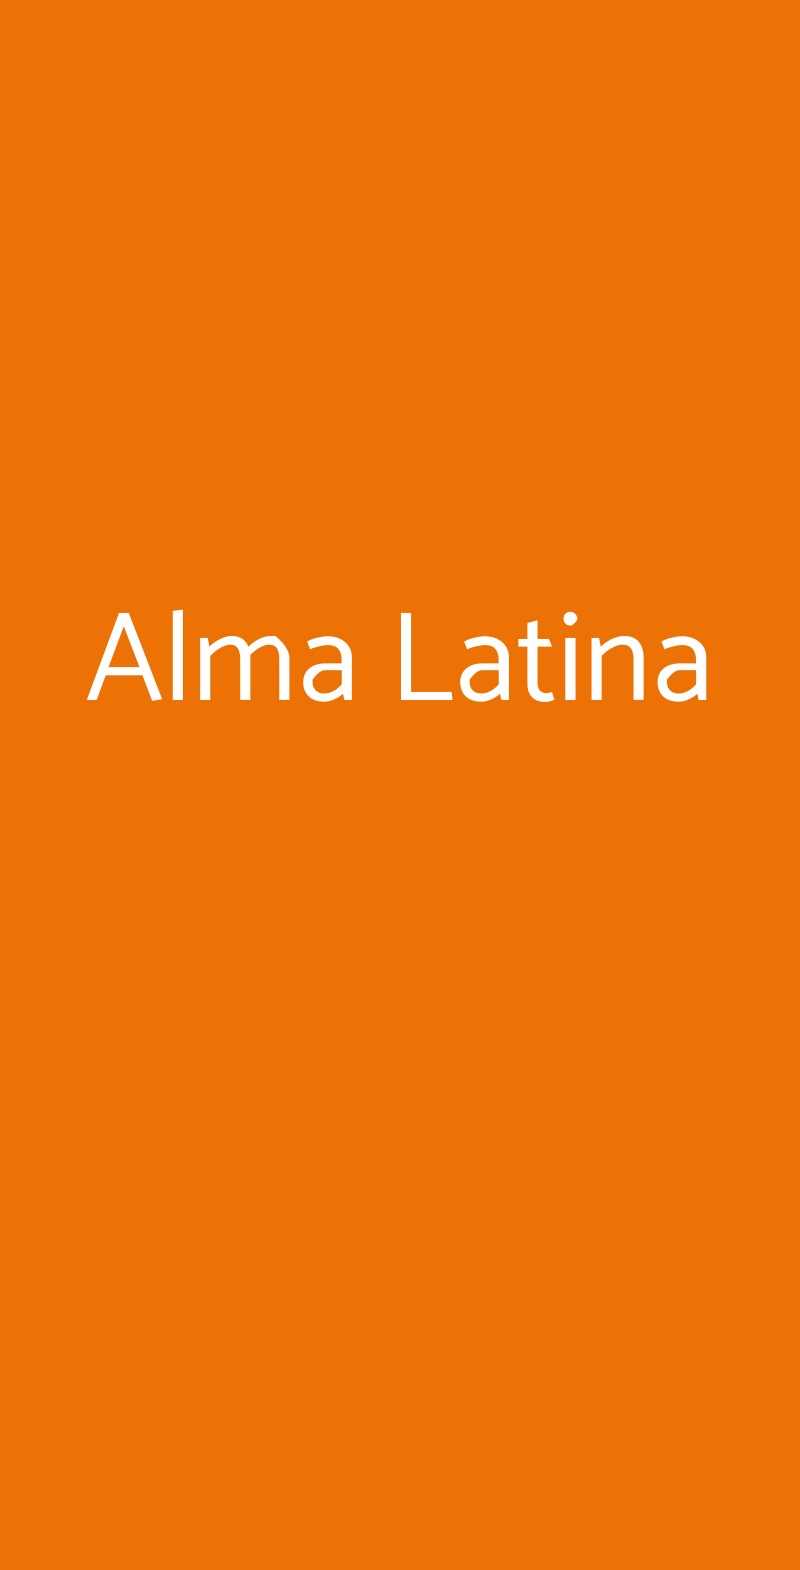 Alma Latina Torino menù 1 pagina